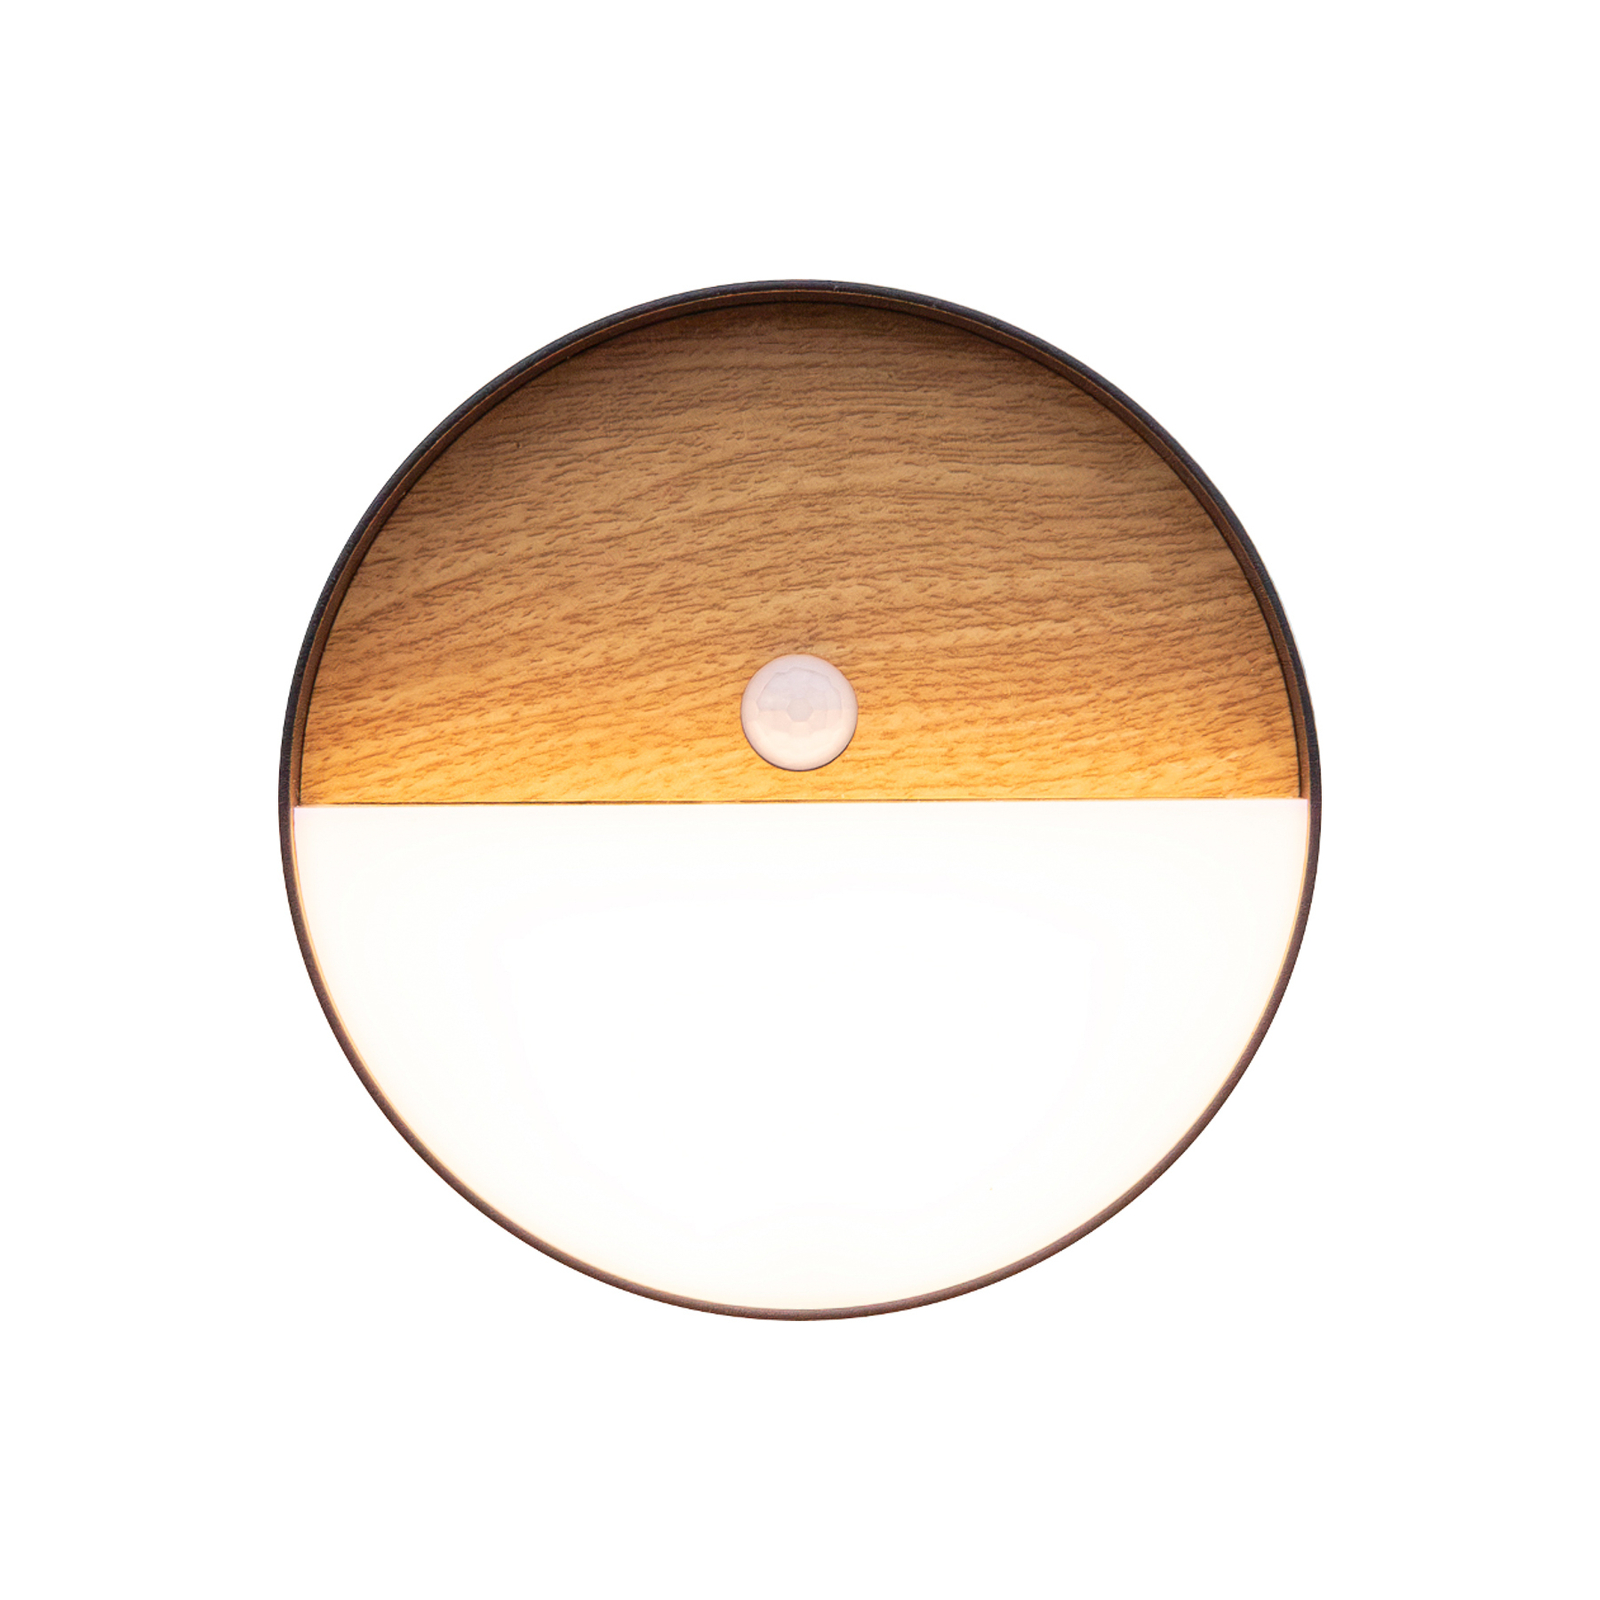 LED dobíjecí venkovní nástěnné světlo Meg, barva dřeva, Ø 15 cm, senzor